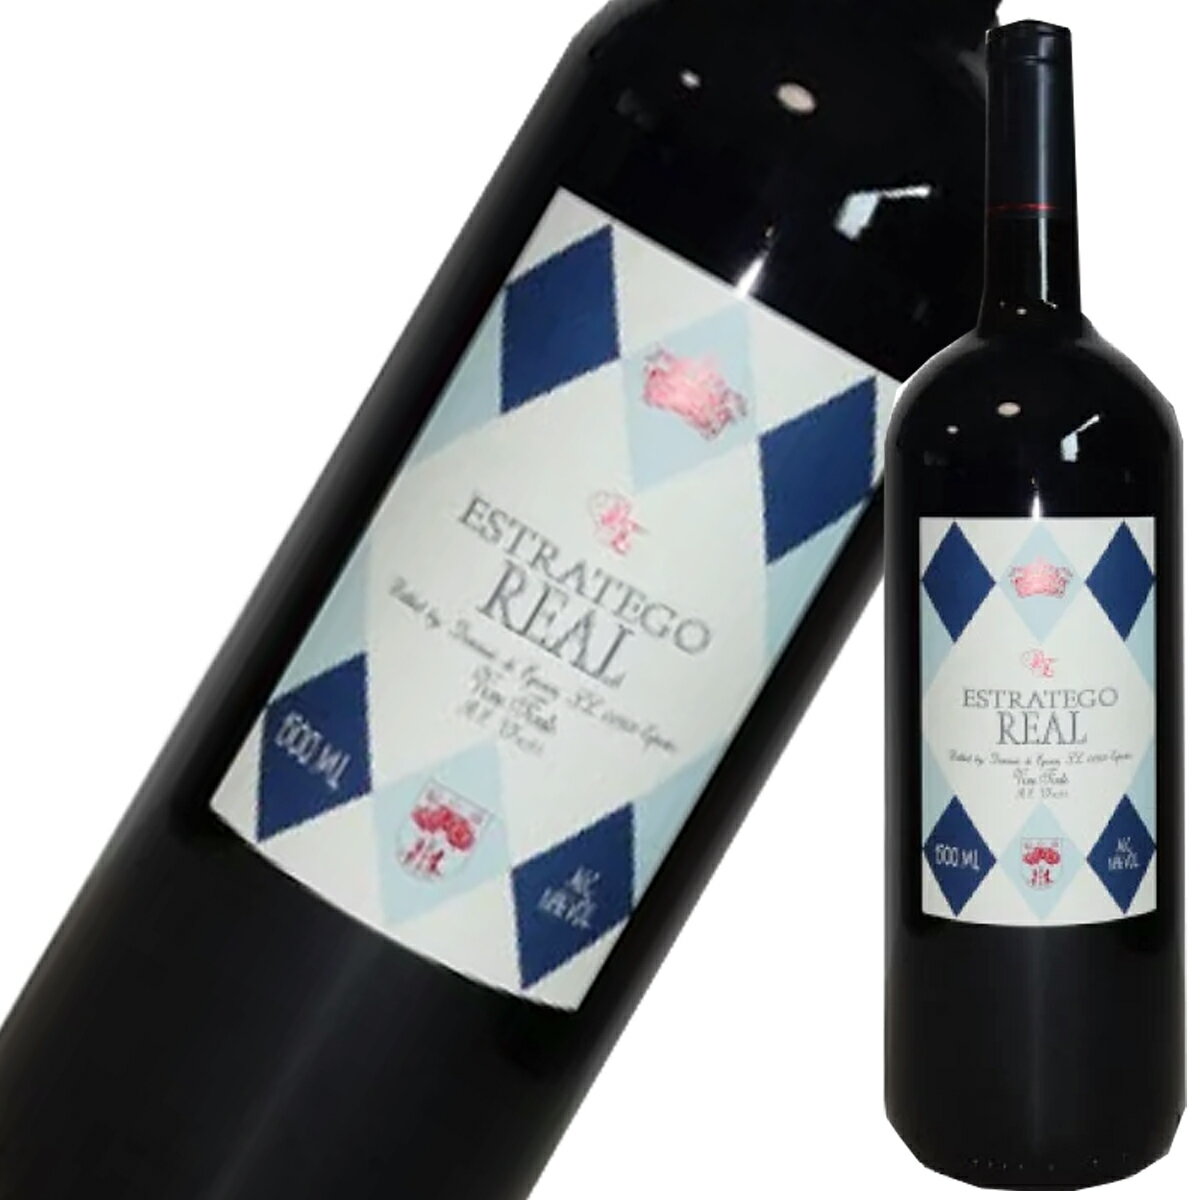 ドミニオ・デ・エグレンはワイン・アドヴォケイトにてスペイン・ワイン初の100点満点を獲得した「テルマンシア」やワイン・エンスージアストが選ぶ2007年度のベスト・ワインに選ばれた「エル・プンティード」など数々のスーパー・スパニッシュを手がけたエグレン家がテーブル・ワインに特化したボデガです。 良く熟した黒いベリー系の香りやチョコレートに木苺のアロマ、温度が上昇するにつれ黒胡椒や八角等もほのかに感じられます。タンニンも充分に熟しており、リッチな果実味と滑らかな酸の絶妙なバランス。ピュアで綺麗なバランスを保ったまま美味しいフルーツの風味が余韻にまで続きます。 ◎「Wow!絶対にケース買いすべきだ」 エストラテゴ・レアル・ティント（赤） 世界で最もワイン市場に影響力があるとも言われるロバート・パーカー氏は、エストラテゴ・レアル(赤)に対し以下の様な絶賛のコメントを与えております。 ≪ロバート・パーカーJr.氏のコメント抜粋≫ ●WOW!（中略）絶対にケース買いすべきだ！ Wine Advocate #117 (1998年6月発行)掲載 ●年に約6,000本の“高級ワイン”を試飲をするがこれほどコストに優れていない。 Wine Advocate #136 (2001年8月発行)掲載 ●こんなにおいしいワインがこの価格で買えるなんて！ Wine Advocate #145 (2003年2月発行)掲載 また、2011年末には、米国のワイン雑誌、ワイン・エンスージアストの、「TOP 100 BEST BUYS 2011」（お買得ワイン100選）にて、エストラテゴ・レアル・ティントのアメリカ流通用の別ラベル“プロトコロ”が第2位を獲得致しました。 「プロトコロ」はエストラテゴ・レアルをアメリカ流通用に名前を変えたもので、中身は同じです。 ◎BARレモンハートに登場 20年に渡り毎回、ウイスキー、ブランデー、バーボン、リキュール、スピリッツなどの一般的な洋酒を始め、ワイン、ビール、日本酒、焼酎、中国酒など様々なお酒を紹介する人気漫画『BARレモン・ハート』にヌマンシアとエストラテゴ・レアルが掲載されました。掲載されている内容は、スペイン・ワイン好きの知人に飲ませるワインをマスターに相談したところ、マスターはヌマンシアを奨める為の布石に先ず、エストラテゴ・レアルを紹介して『1000円ちょっとでこの味』『コスト・パフォーマンスも最高のこのワインにはちょっとした秘密があります』とエストラテゴ・レアルの説明から発展させて、翌日にヌマンシアをサービスするという展開です。ヌマンシアを飲んだ客の感想は『凄く濃厚なのになめらかで…、こんなテンプラニーリョ初めてよ！』と感動しております。 生産者名：DOMINIO DE EGUREN （ドミニオ・デ・エグレン） 原産地呼称：VINO DE MESA 品種：テンプラニーリョ100％(マンチュエラ産) 醸造：アメリカンオーク3ヶ月熟成ドミニオ・デ・エグレン ドミニオ・デ・エグレンはワイン・アドヴォケイトにてスペイン・ワイン初の100点満点を獲得した「テルマンシア」やワイン・エンスージアストが選ぶ2007年度のベスト・ワインに選ばれた「エル・プンティード」など数々のスーパー・スパニッシュを手がけたエグレン家がテーブル・ワインに特化したボデガです。 『安定した、かつ安価で上質なワインを市場に供給したい』という思いからドミニオ・デ・エグレンを設立しようと志した1980年代は、スペインの経済成長に伴うインフレで、リオハ・ワインが毎年のように約3％ずつ値上がりをしていた時期でもあり、エグレン家が拠点とするリオハではなく、スペイン中の違う地域で畑を探し回りました。設立当初のポリシーを守り、1996年から価格は動いておりません。 現在ドミニオ・デ・エグレンにて使われる葡萄は栽培方法や収穫期などエグレン・スタイルを守ってくれる契約農家からのものを使用。カスティーリャ・ラ・マンチャ州のマンチュエラより収穫されます。畑は標高700?900mの高所にあり、年間降水量は400ミリ程と非常に乾燥しており、病気の心配が無い為、農薬はもちろん銅や硫黄の使用もしておらず、認証こそありませんが有機栽培と呼べる栽培を行っております。また、エグレン・ファミリーが造るワインが全てそうであるようにドミニオ・デ・エグレンに関しても収穫は全て手摘みにて行っております。